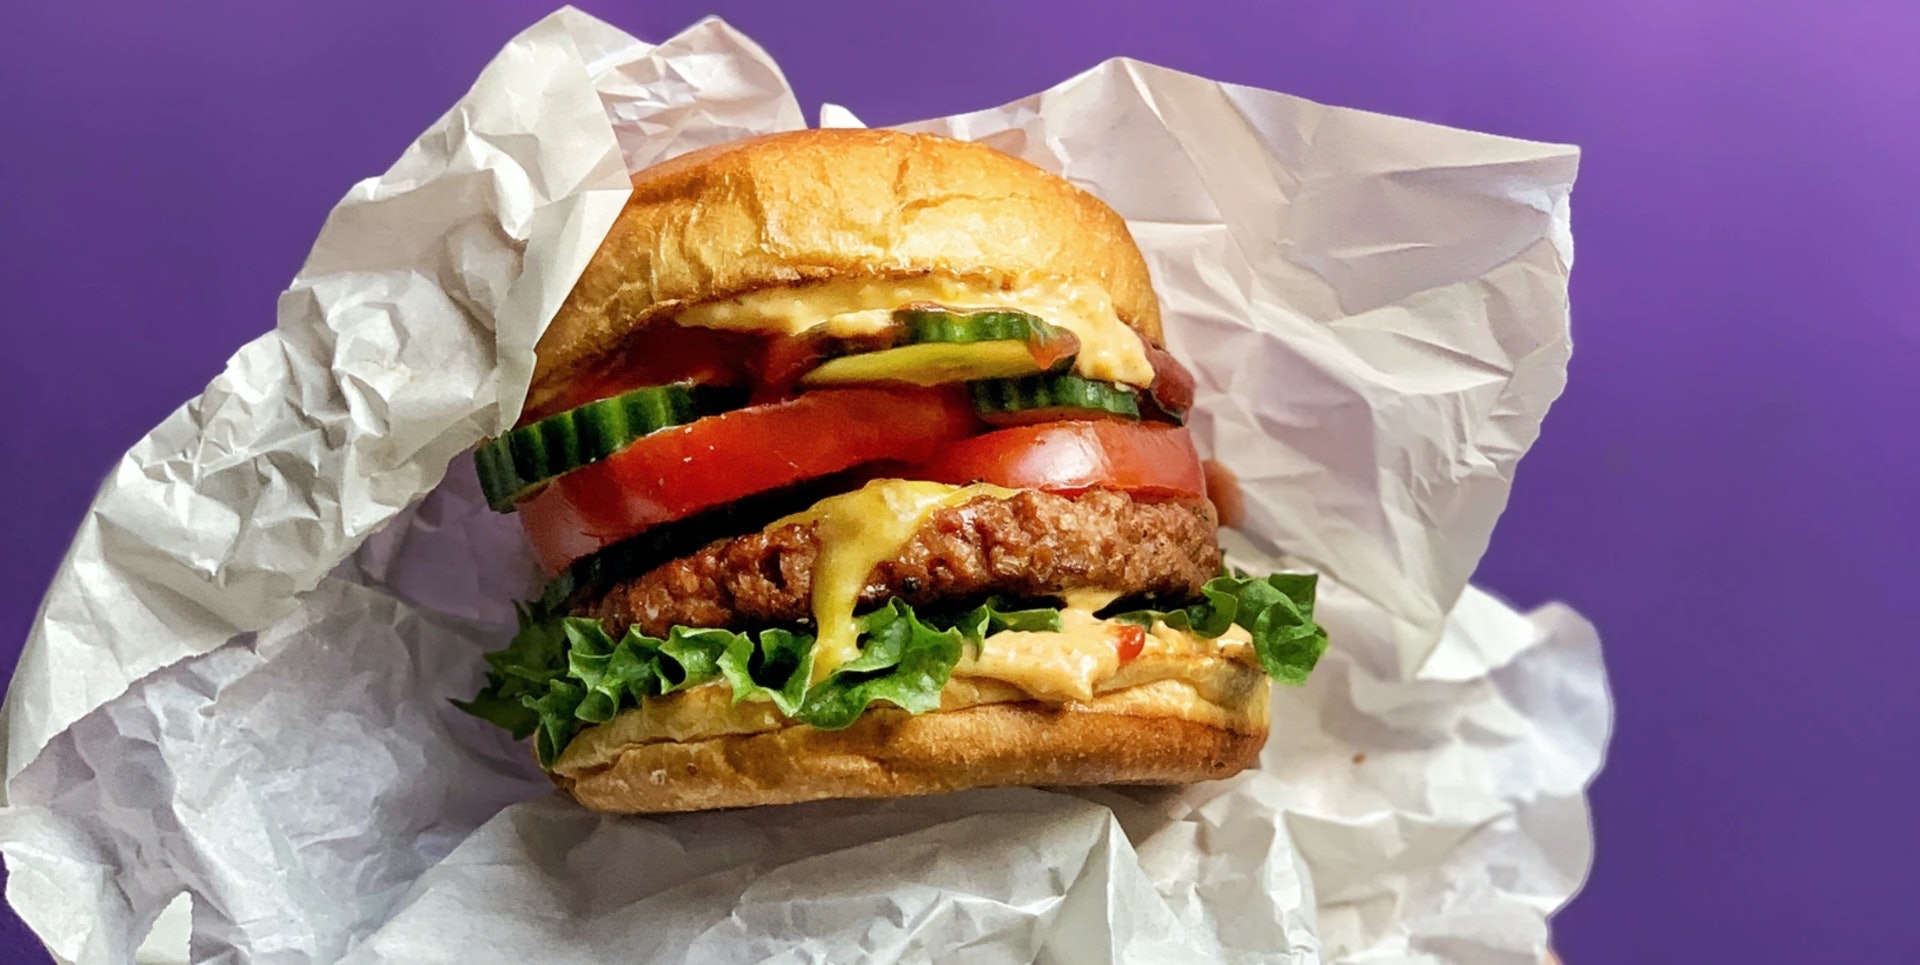 以測試的素漢堡包為例，素菜不一定較葷菜含較低鈉或低脂肪，素漢堡包的平均鈉含量高於牛肉漢堡包。（資料圖片）